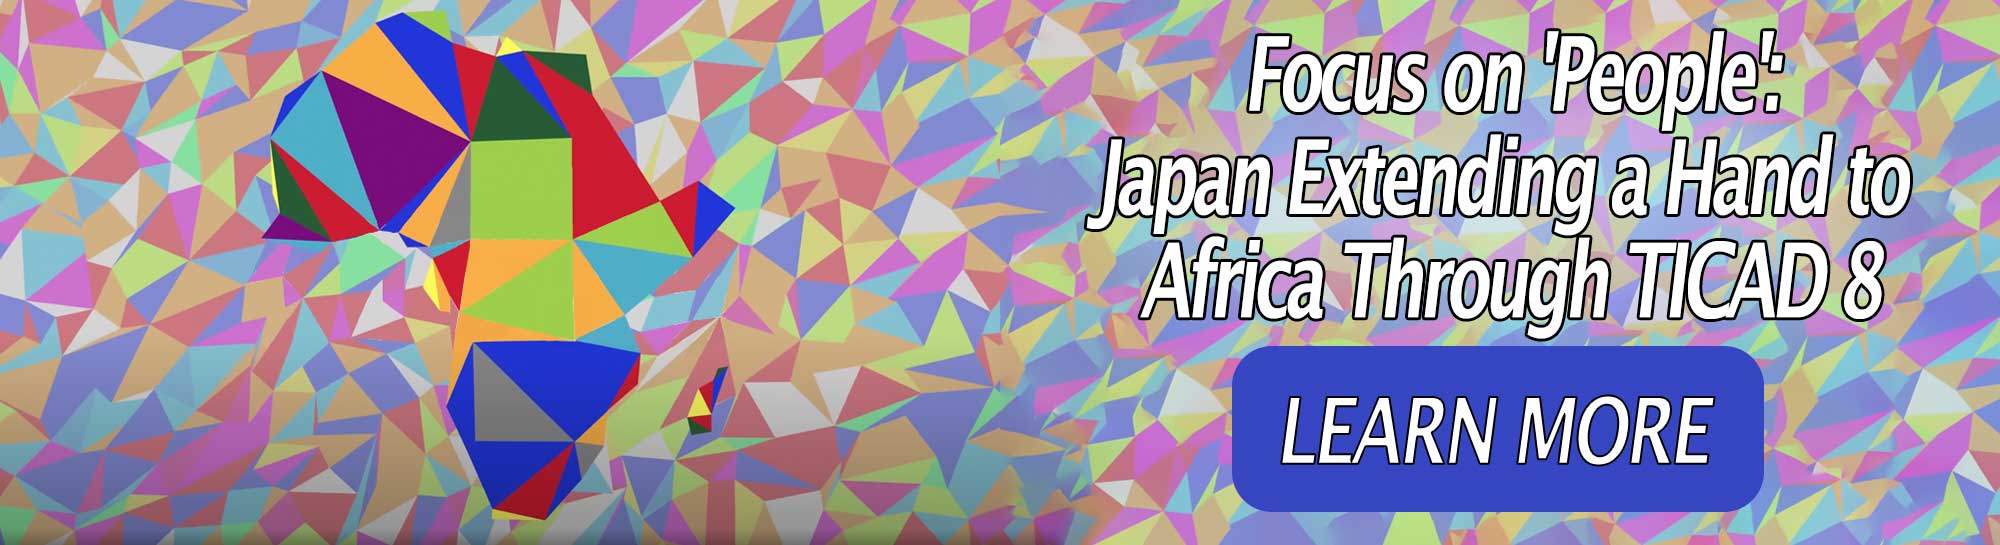 มุ่งเน้นไปที่ 'ผู้คน': ญี่ปุ่นเข้าถึงแอฟริกาผ่าน TICAD 8